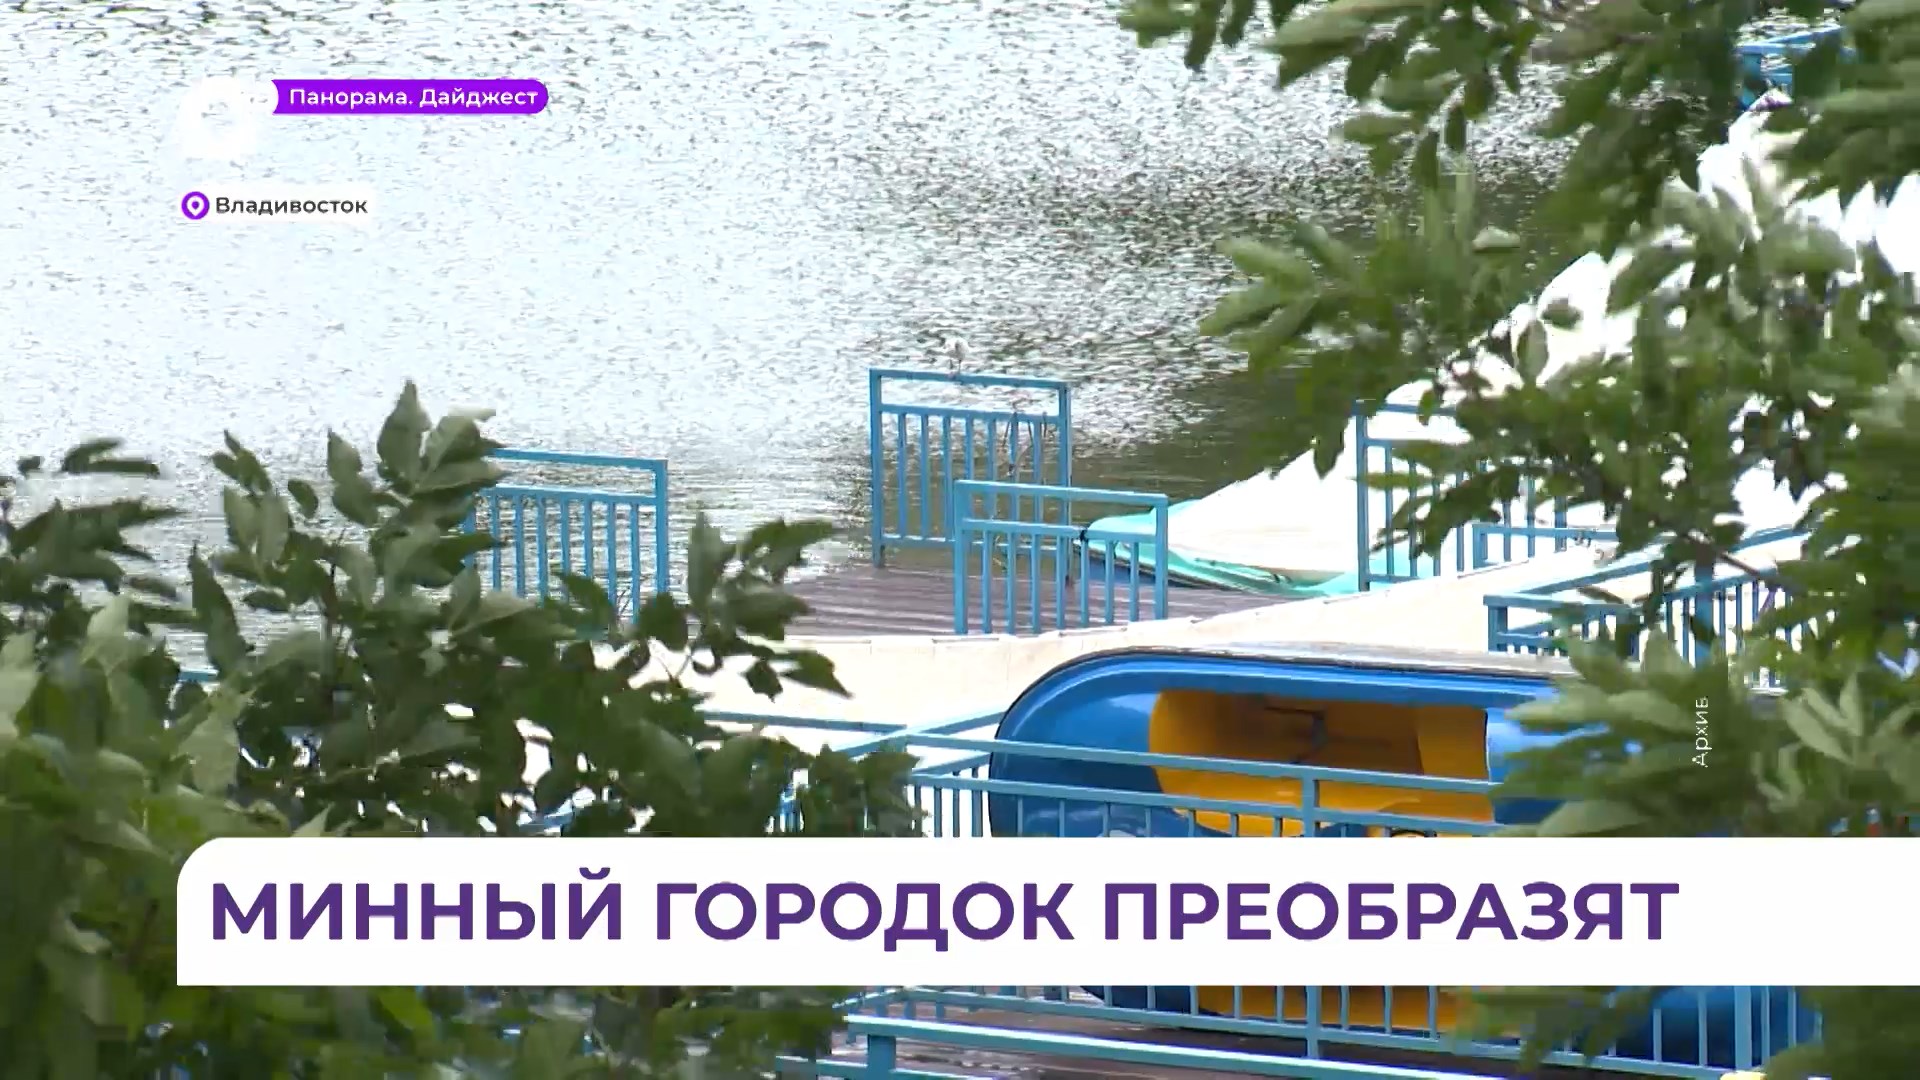 Проект развития парка Минного городка во Владивостоке презентовали на ПМЭФ